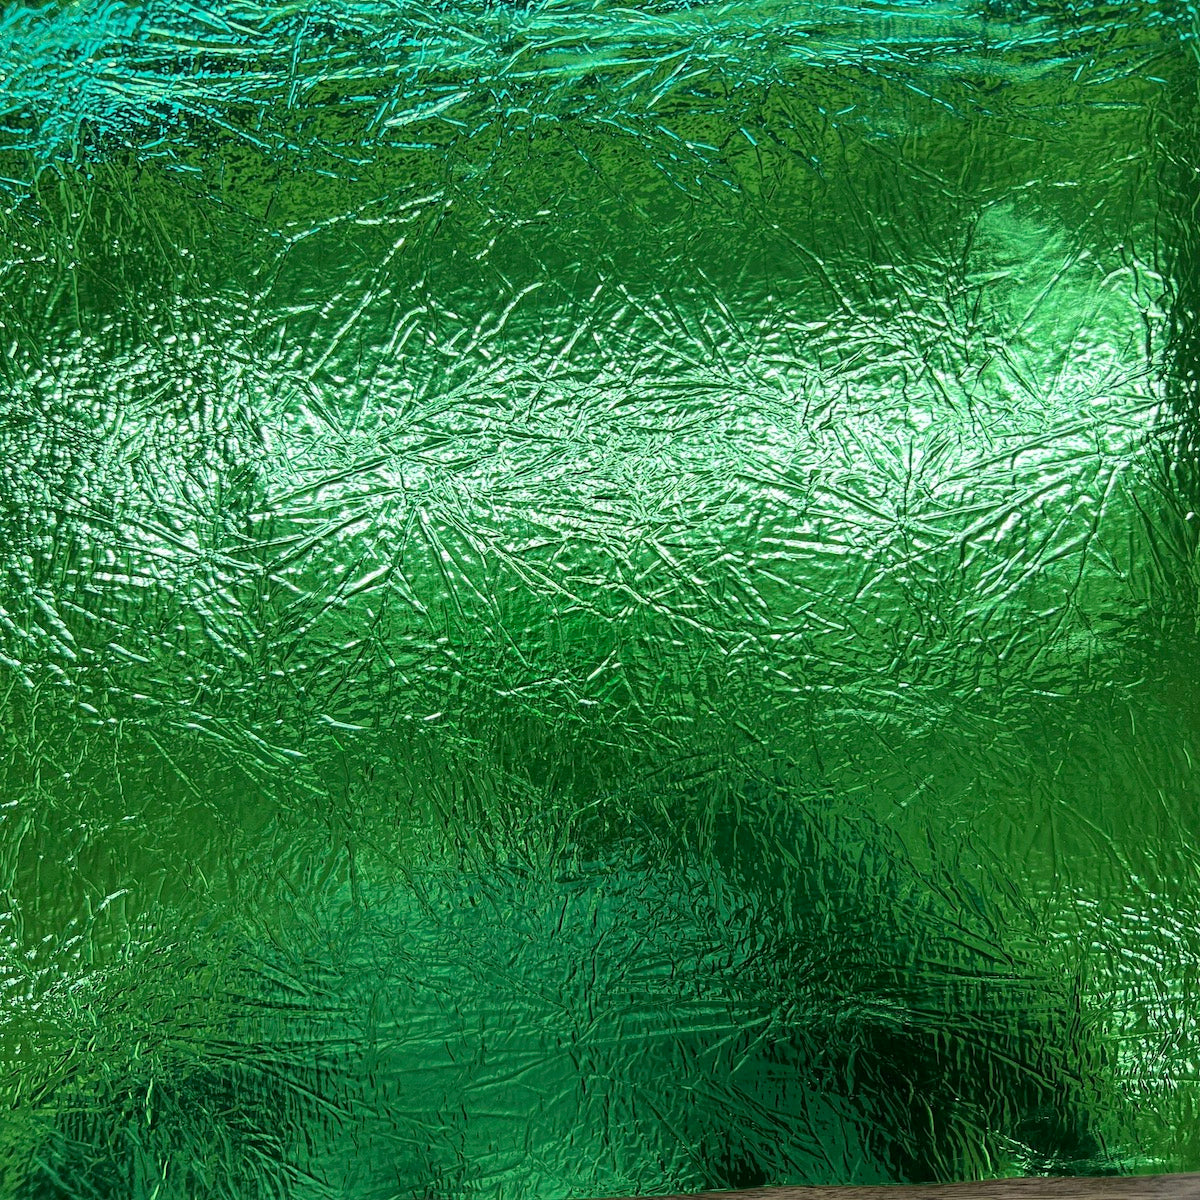 Tela de vinilo reflectante con efecto espejo cromado desgastado y triturado de color verde lima 